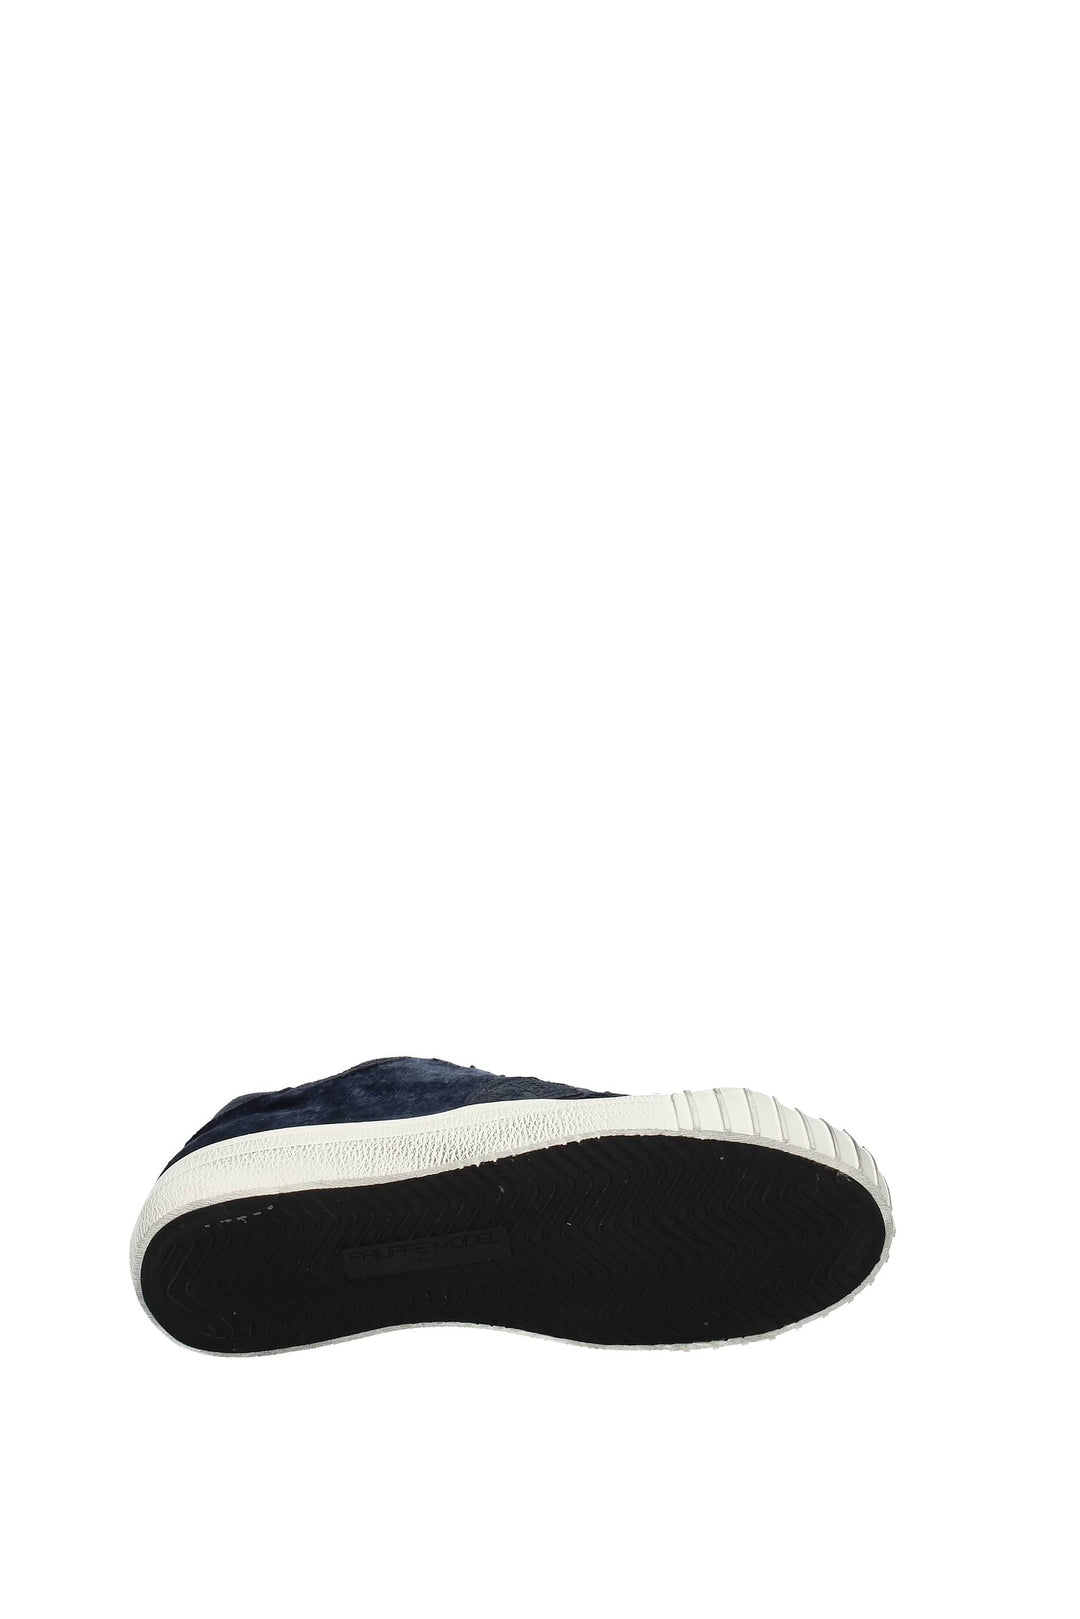 Sneakers Gare Velluto Blu - Philippe Model - Donna